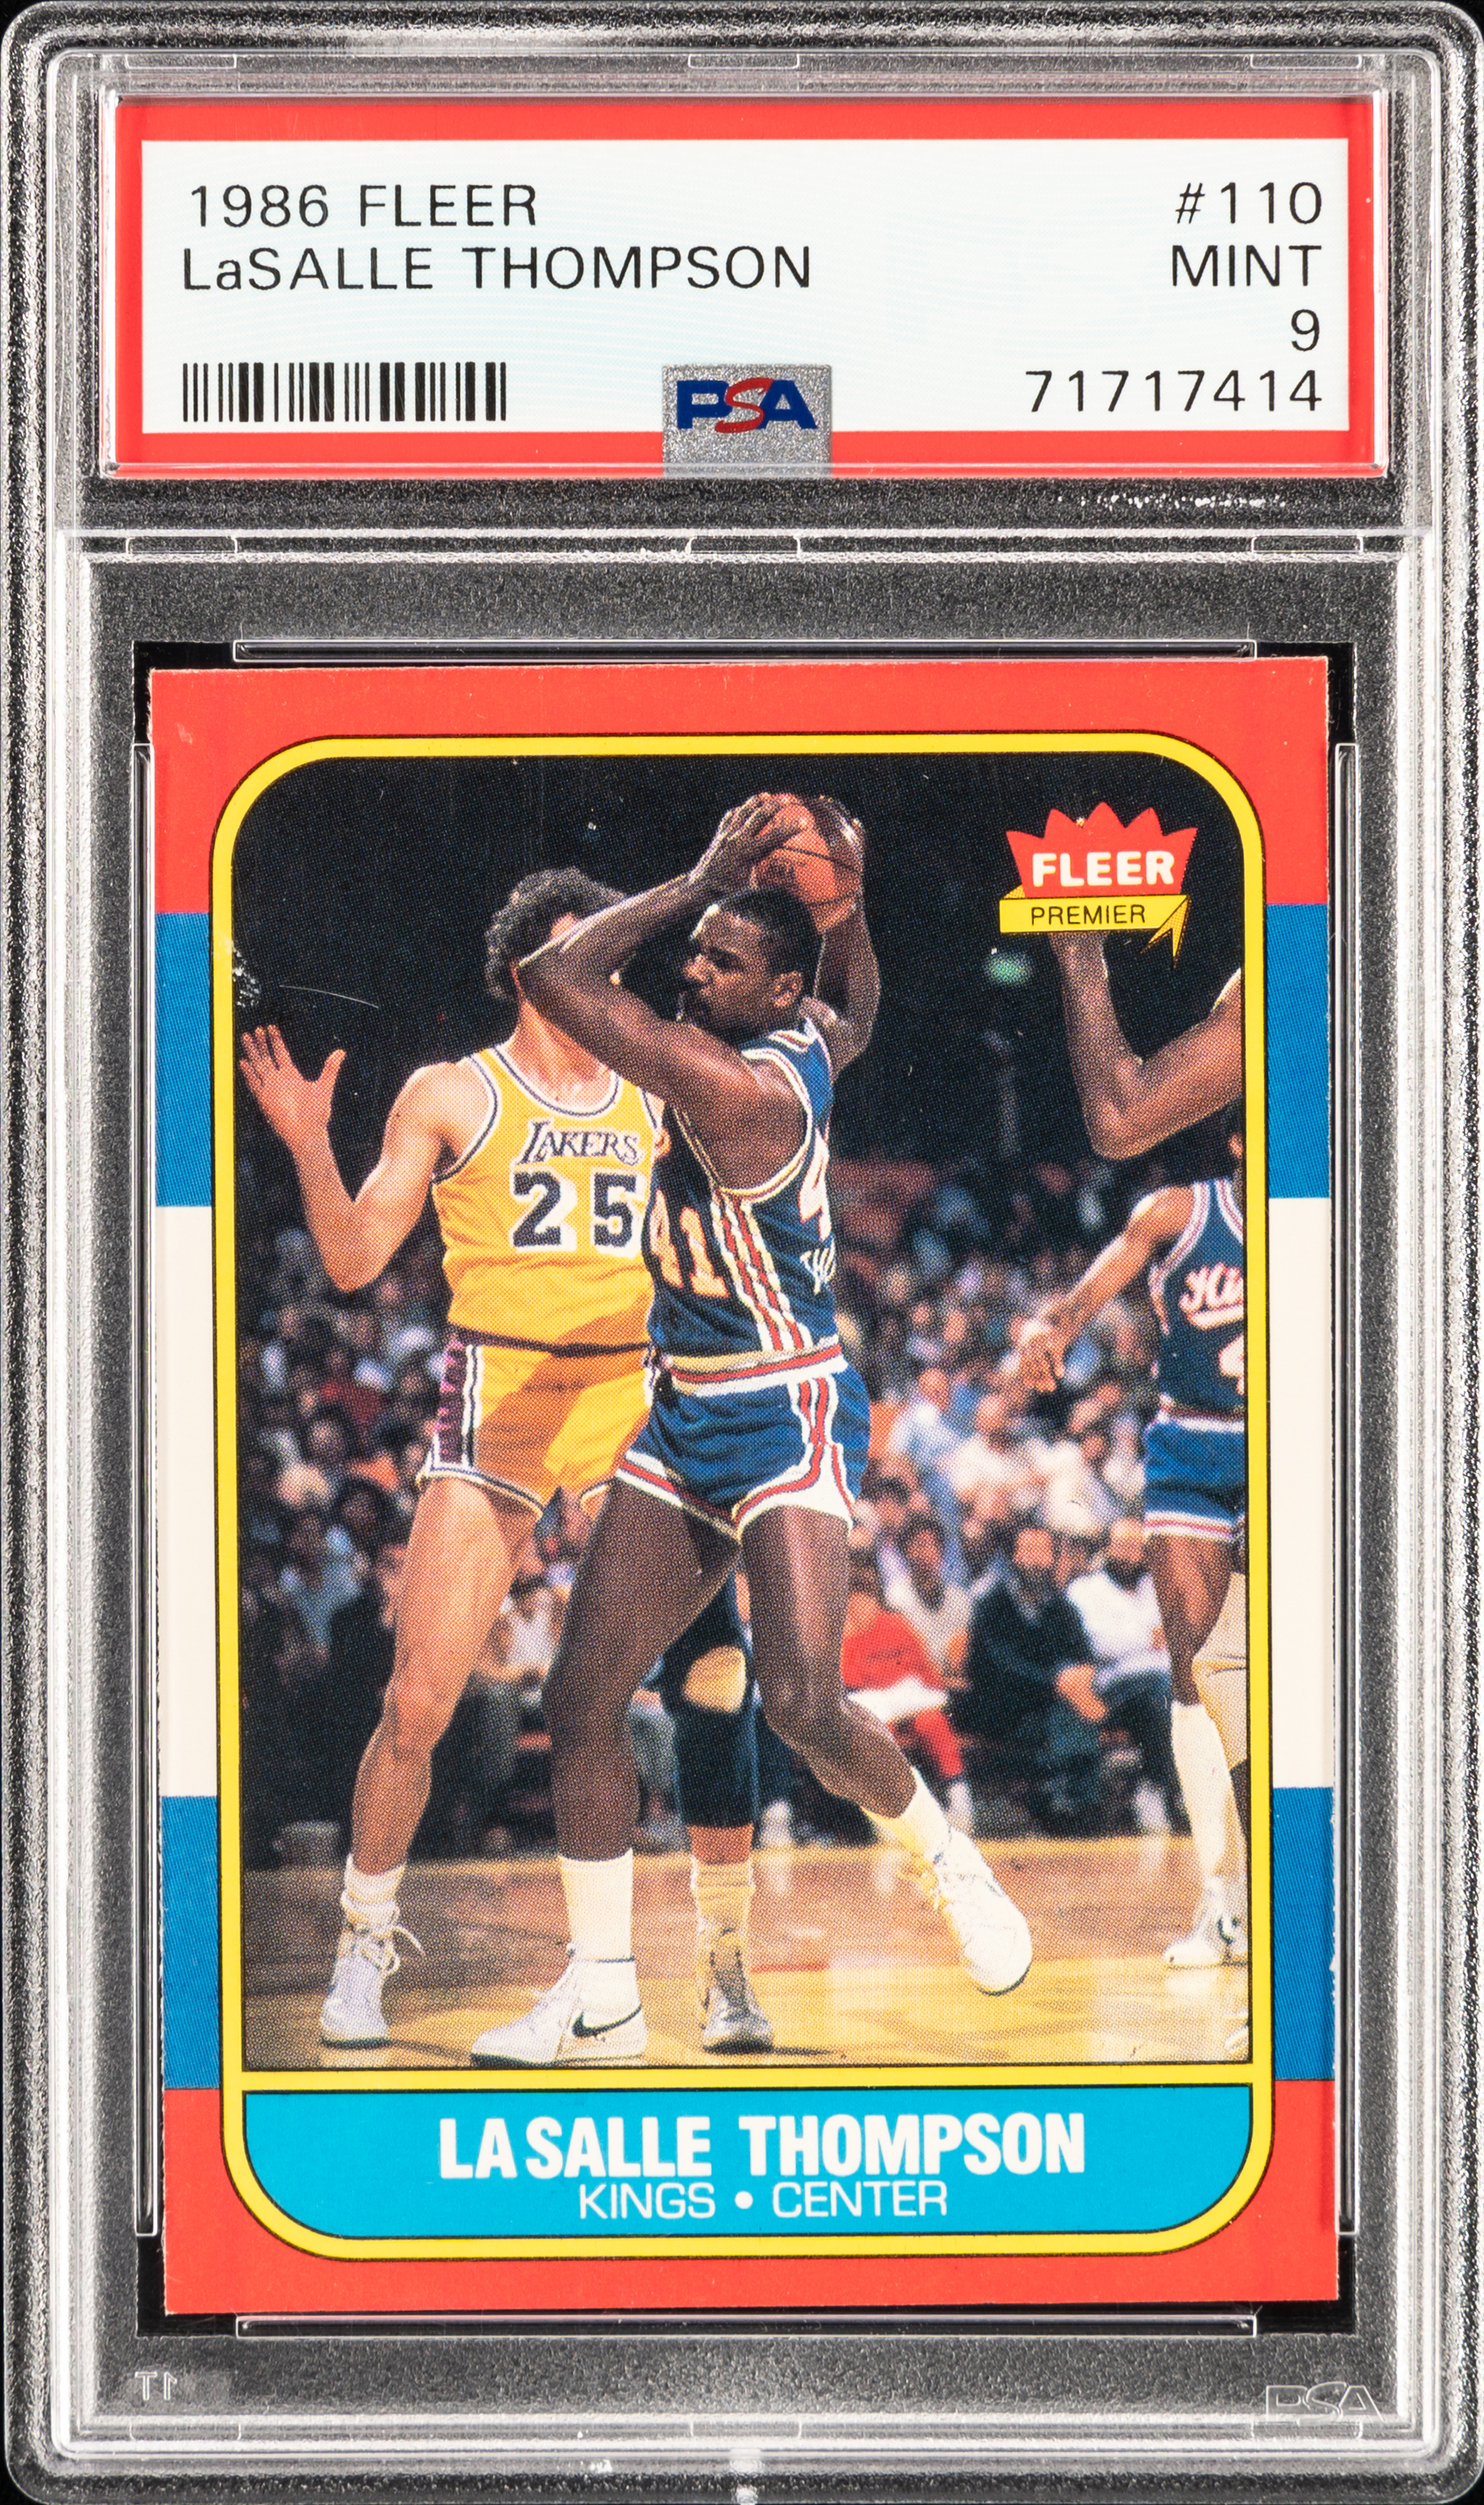 1986-87 Fleer #110 Lasalle Thompson Rookie Card – PSA MINT 9